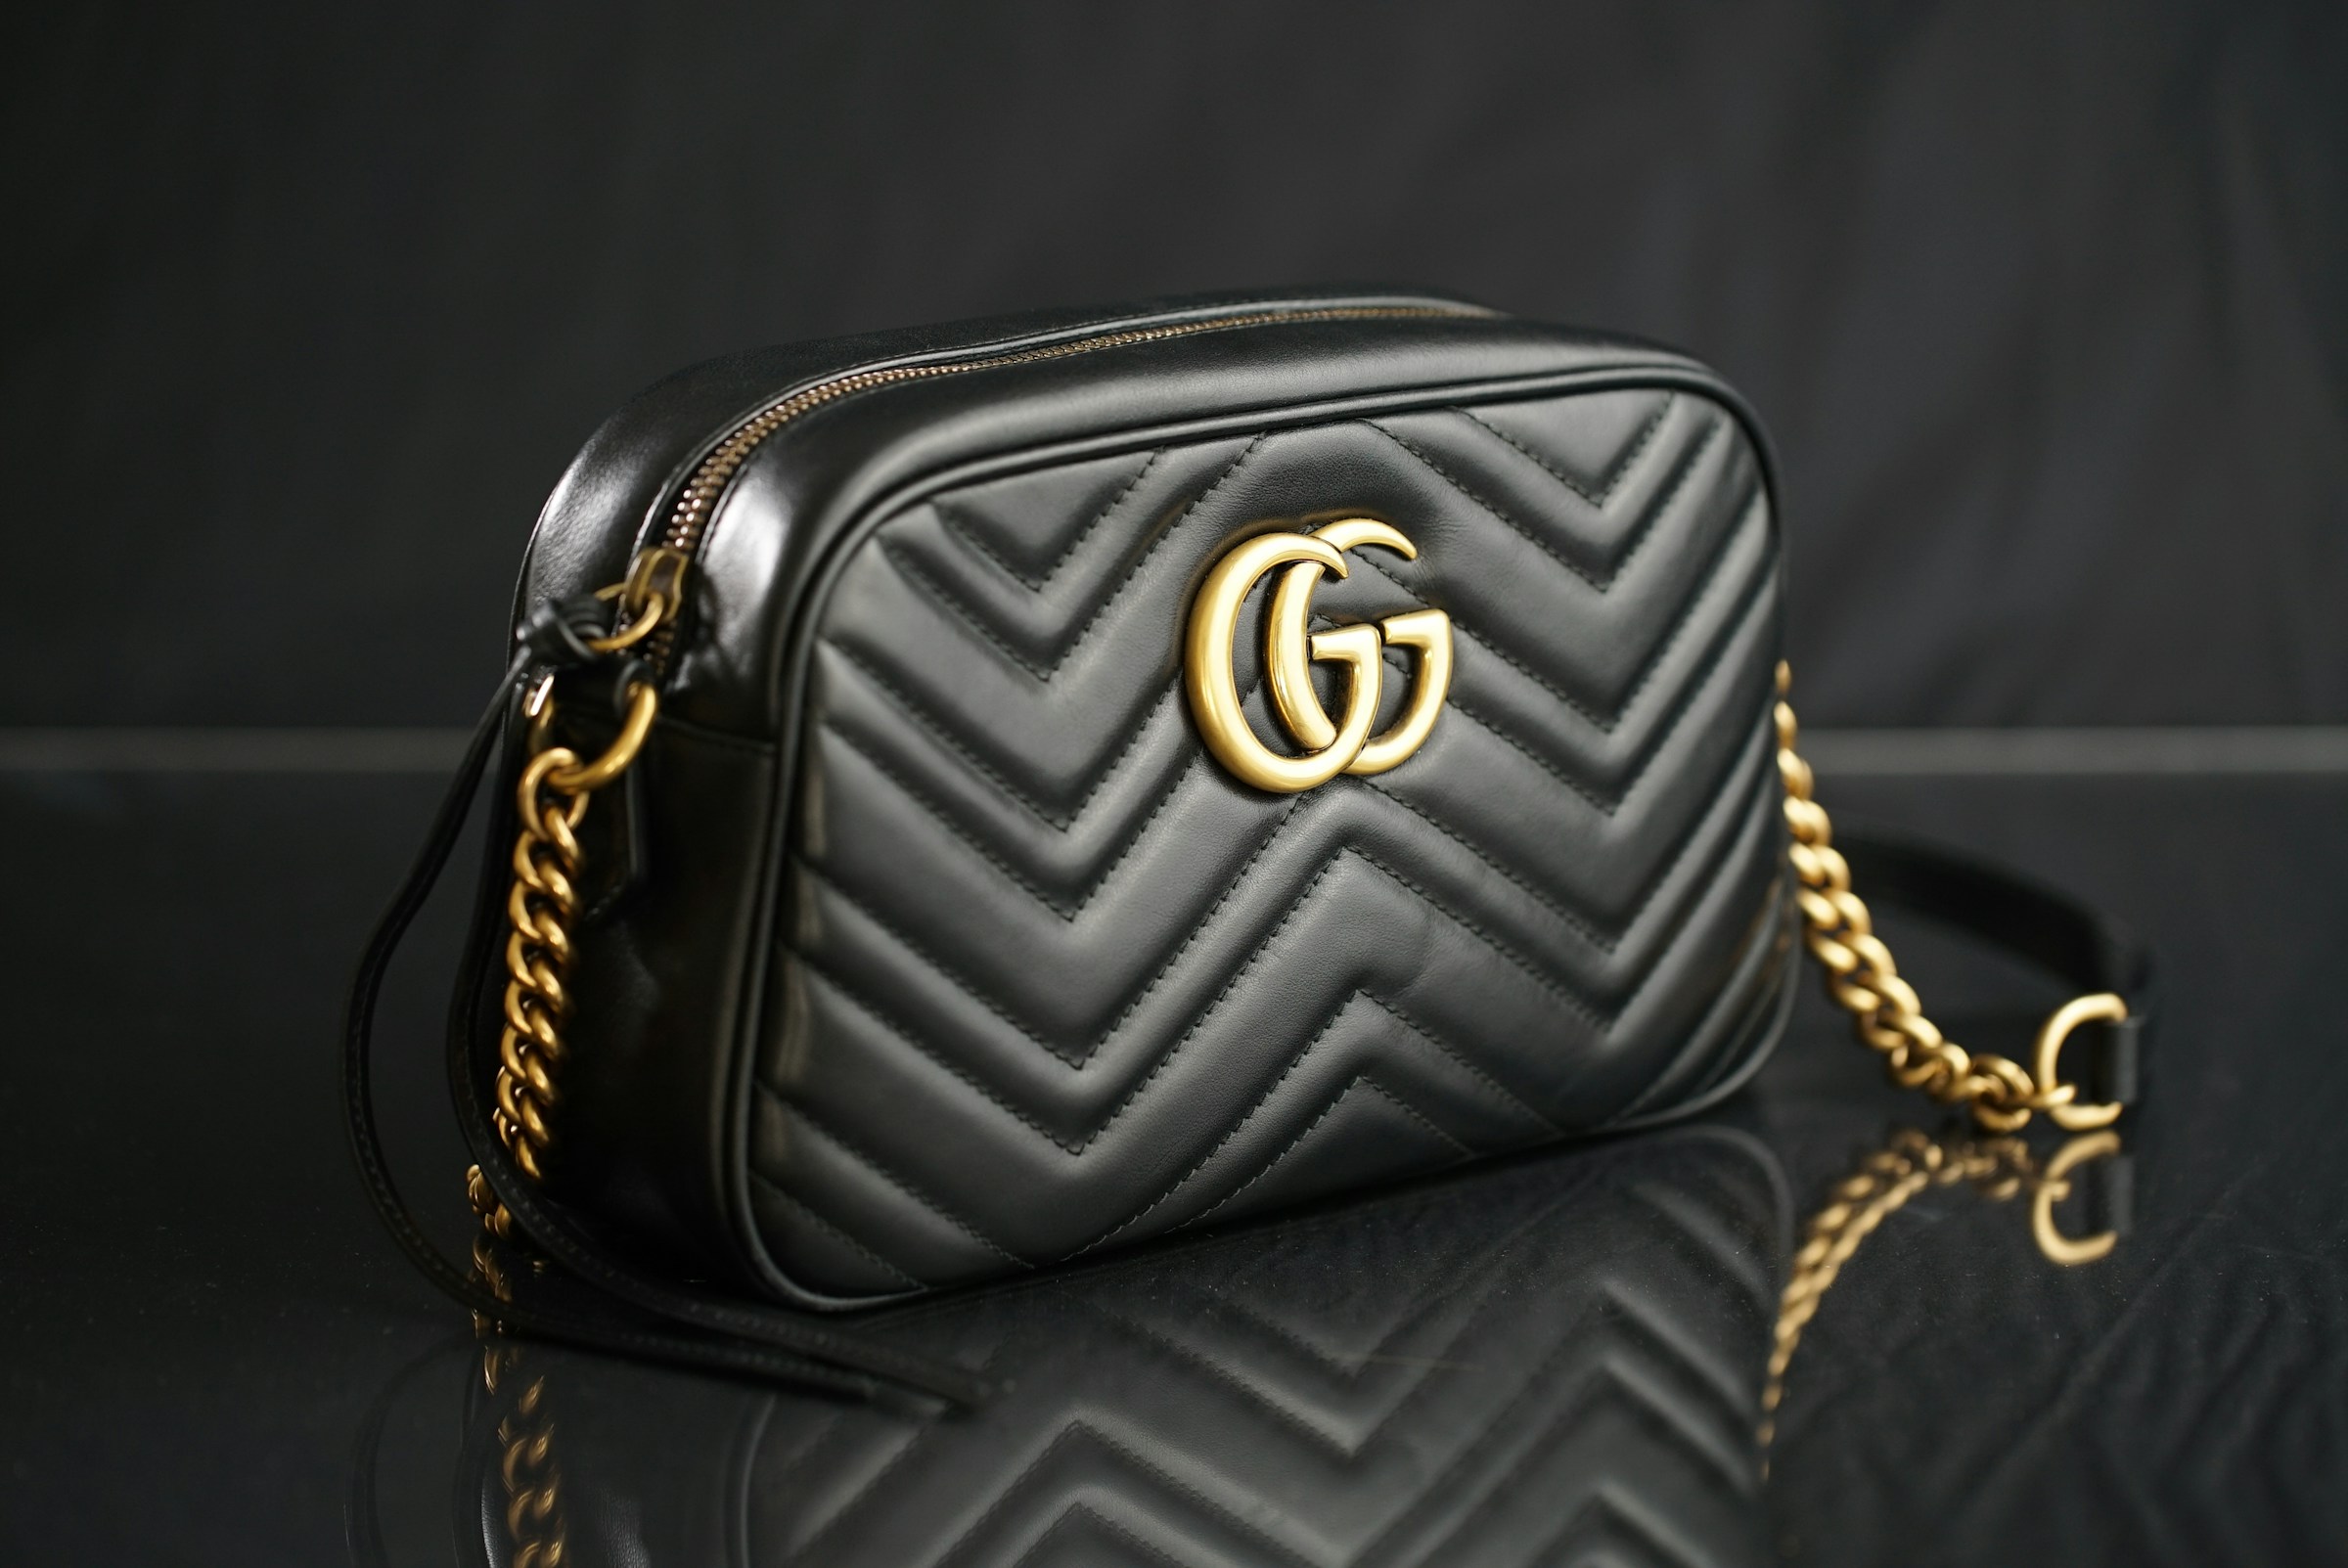 Schwarze Gucci-Handtasche | Quelle: Unsplash